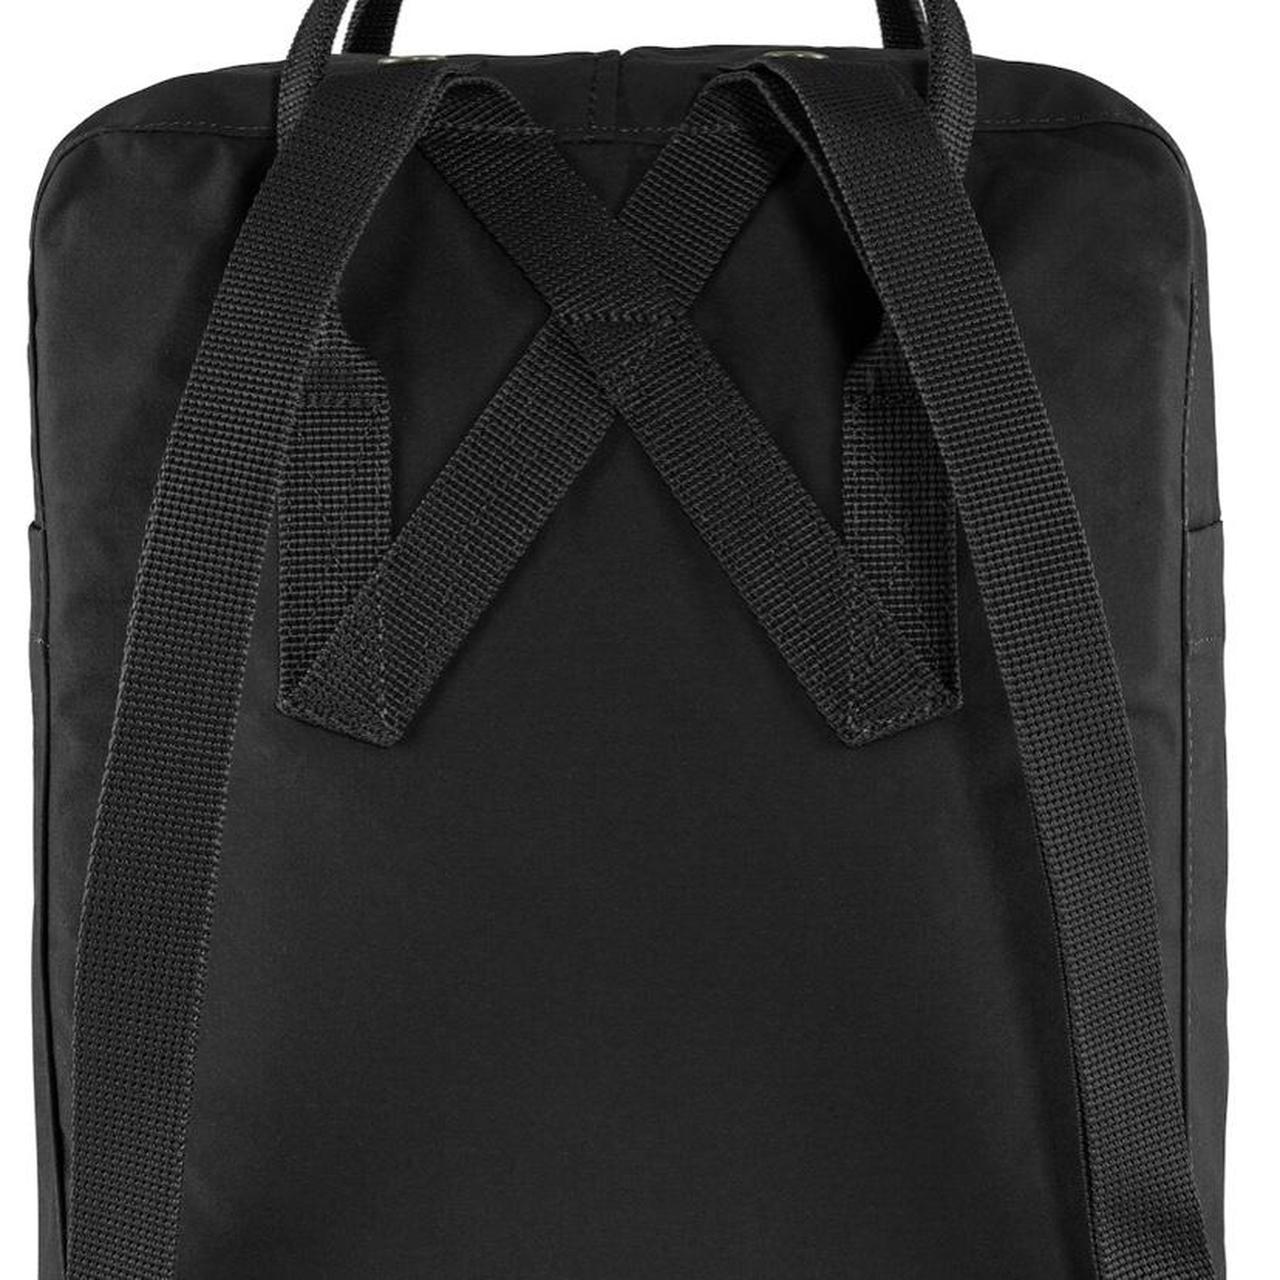 Fjallraven Kanken backpack black - Depop